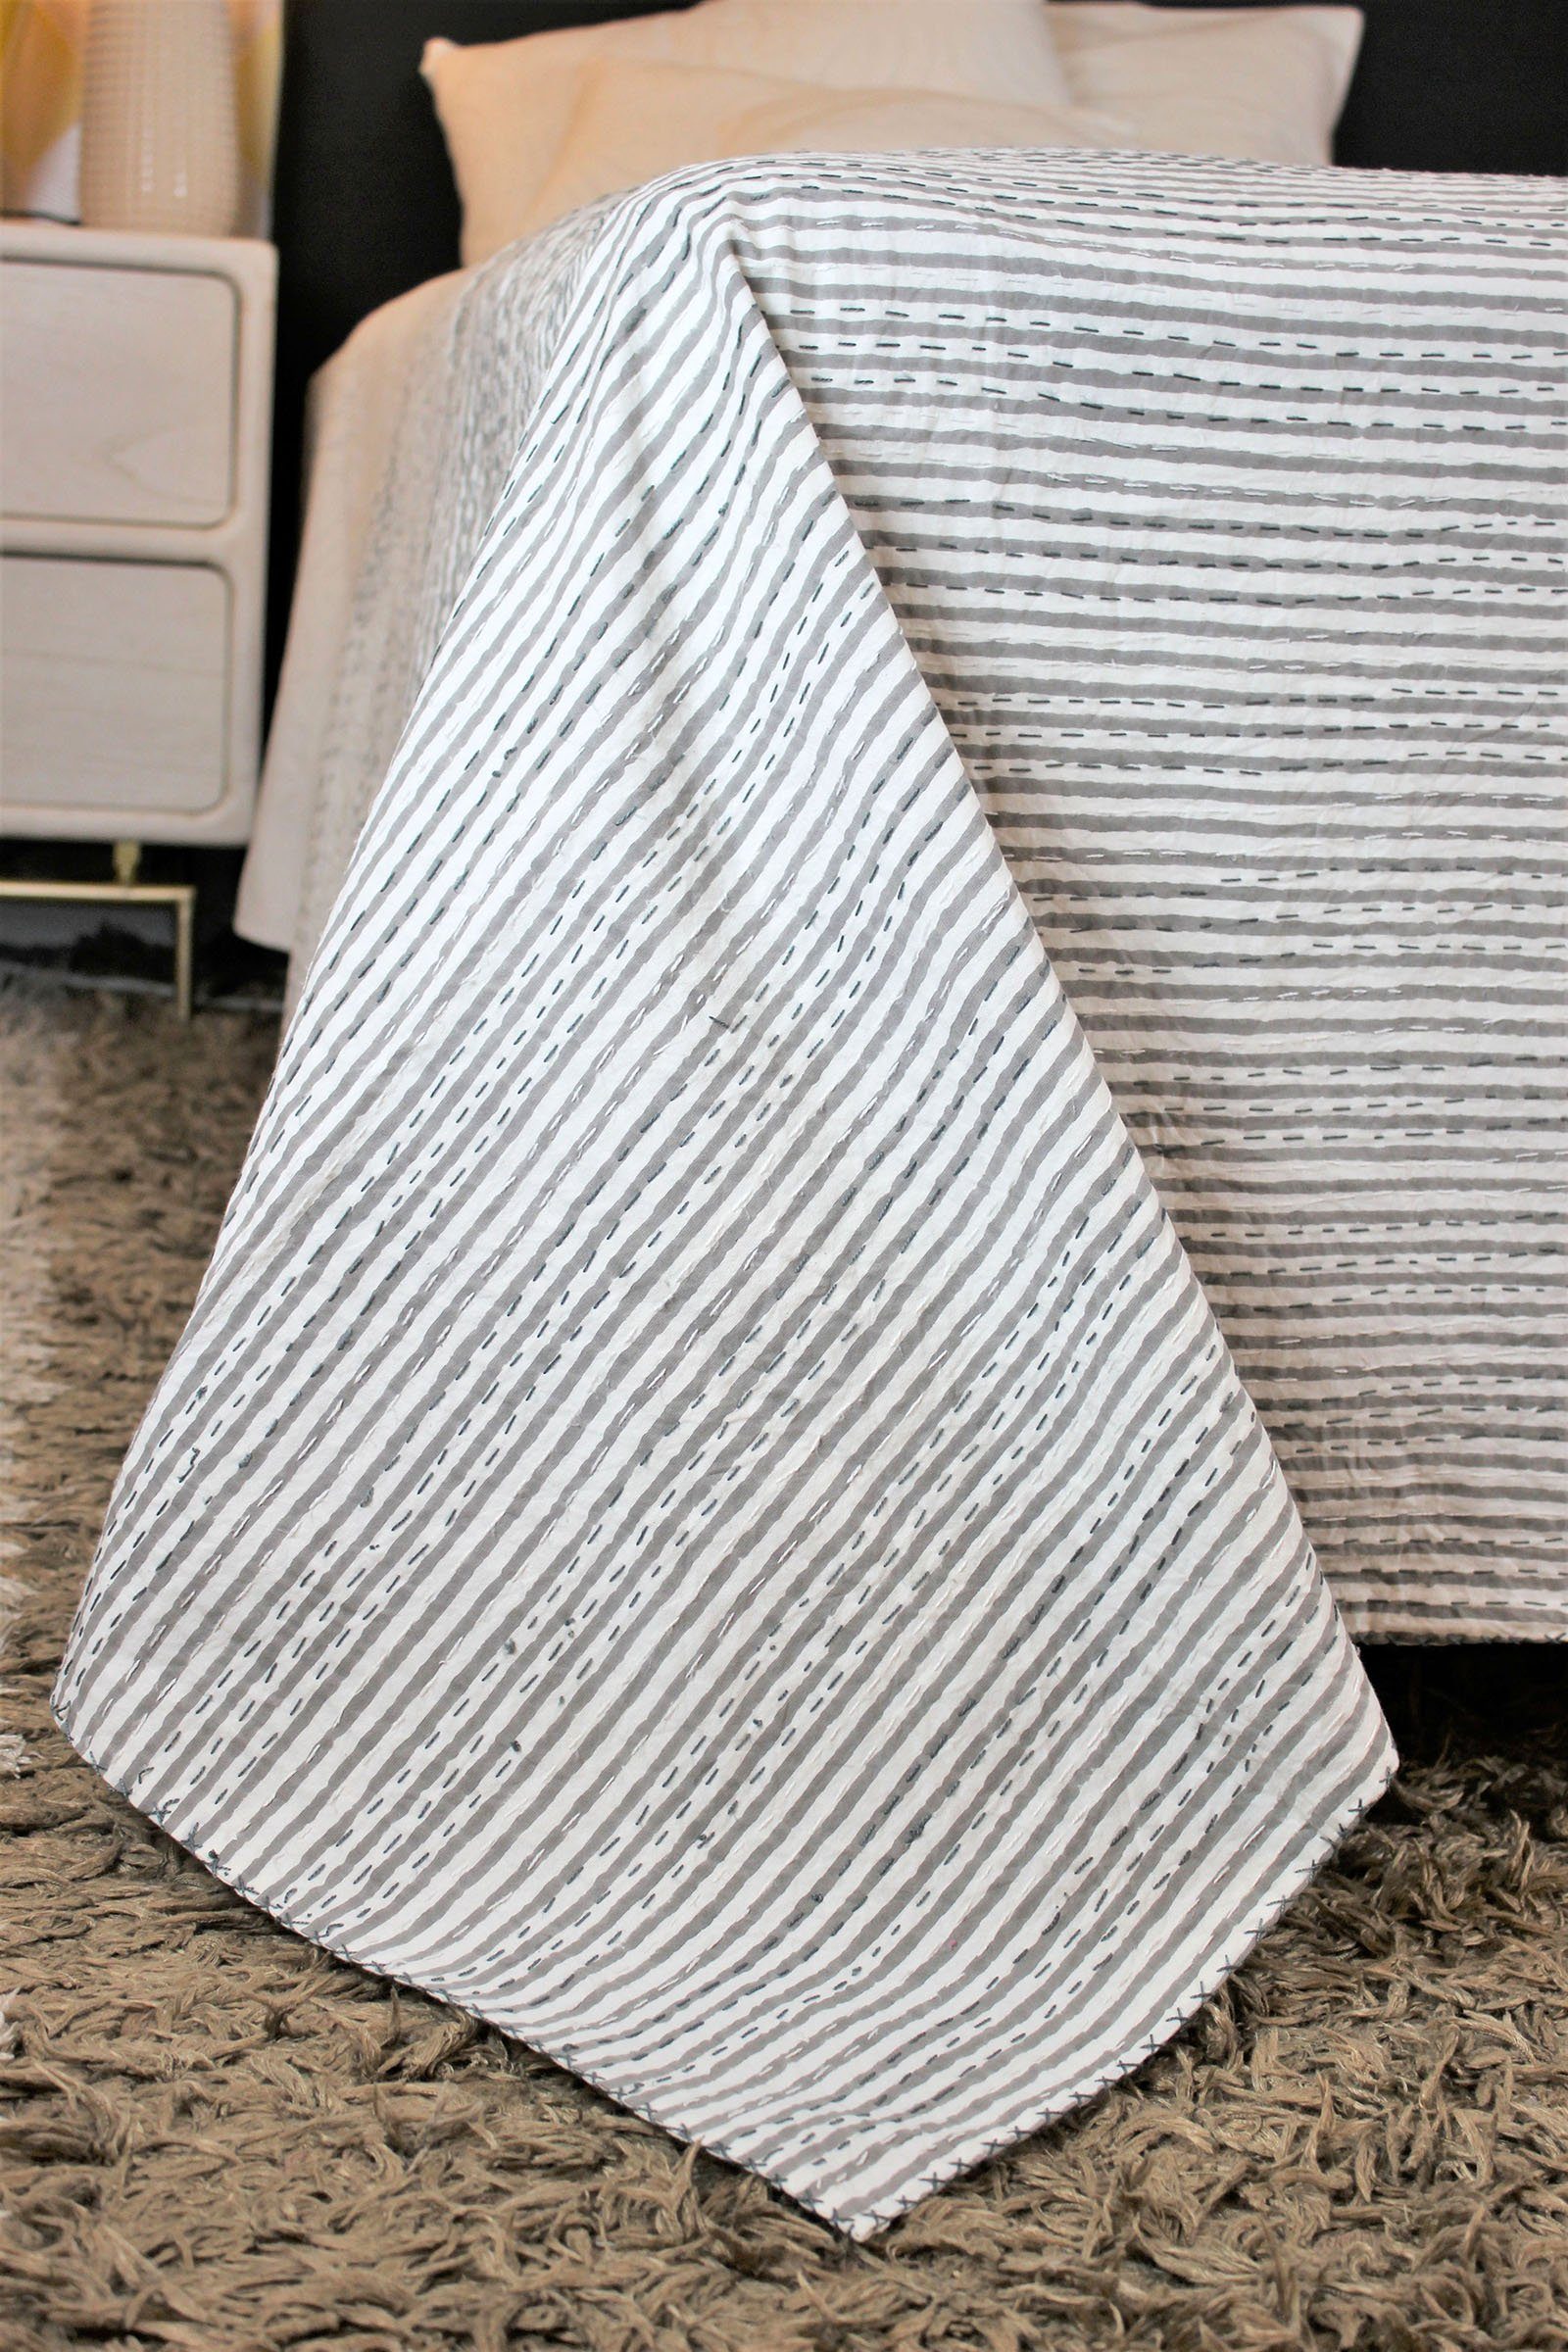 Tagesdecke Tagesdecke Bettüberwurf Blockprint grau weiß gestreift,  Indradanush, auch als Tischdecke, extra groß 170 x 270 cm